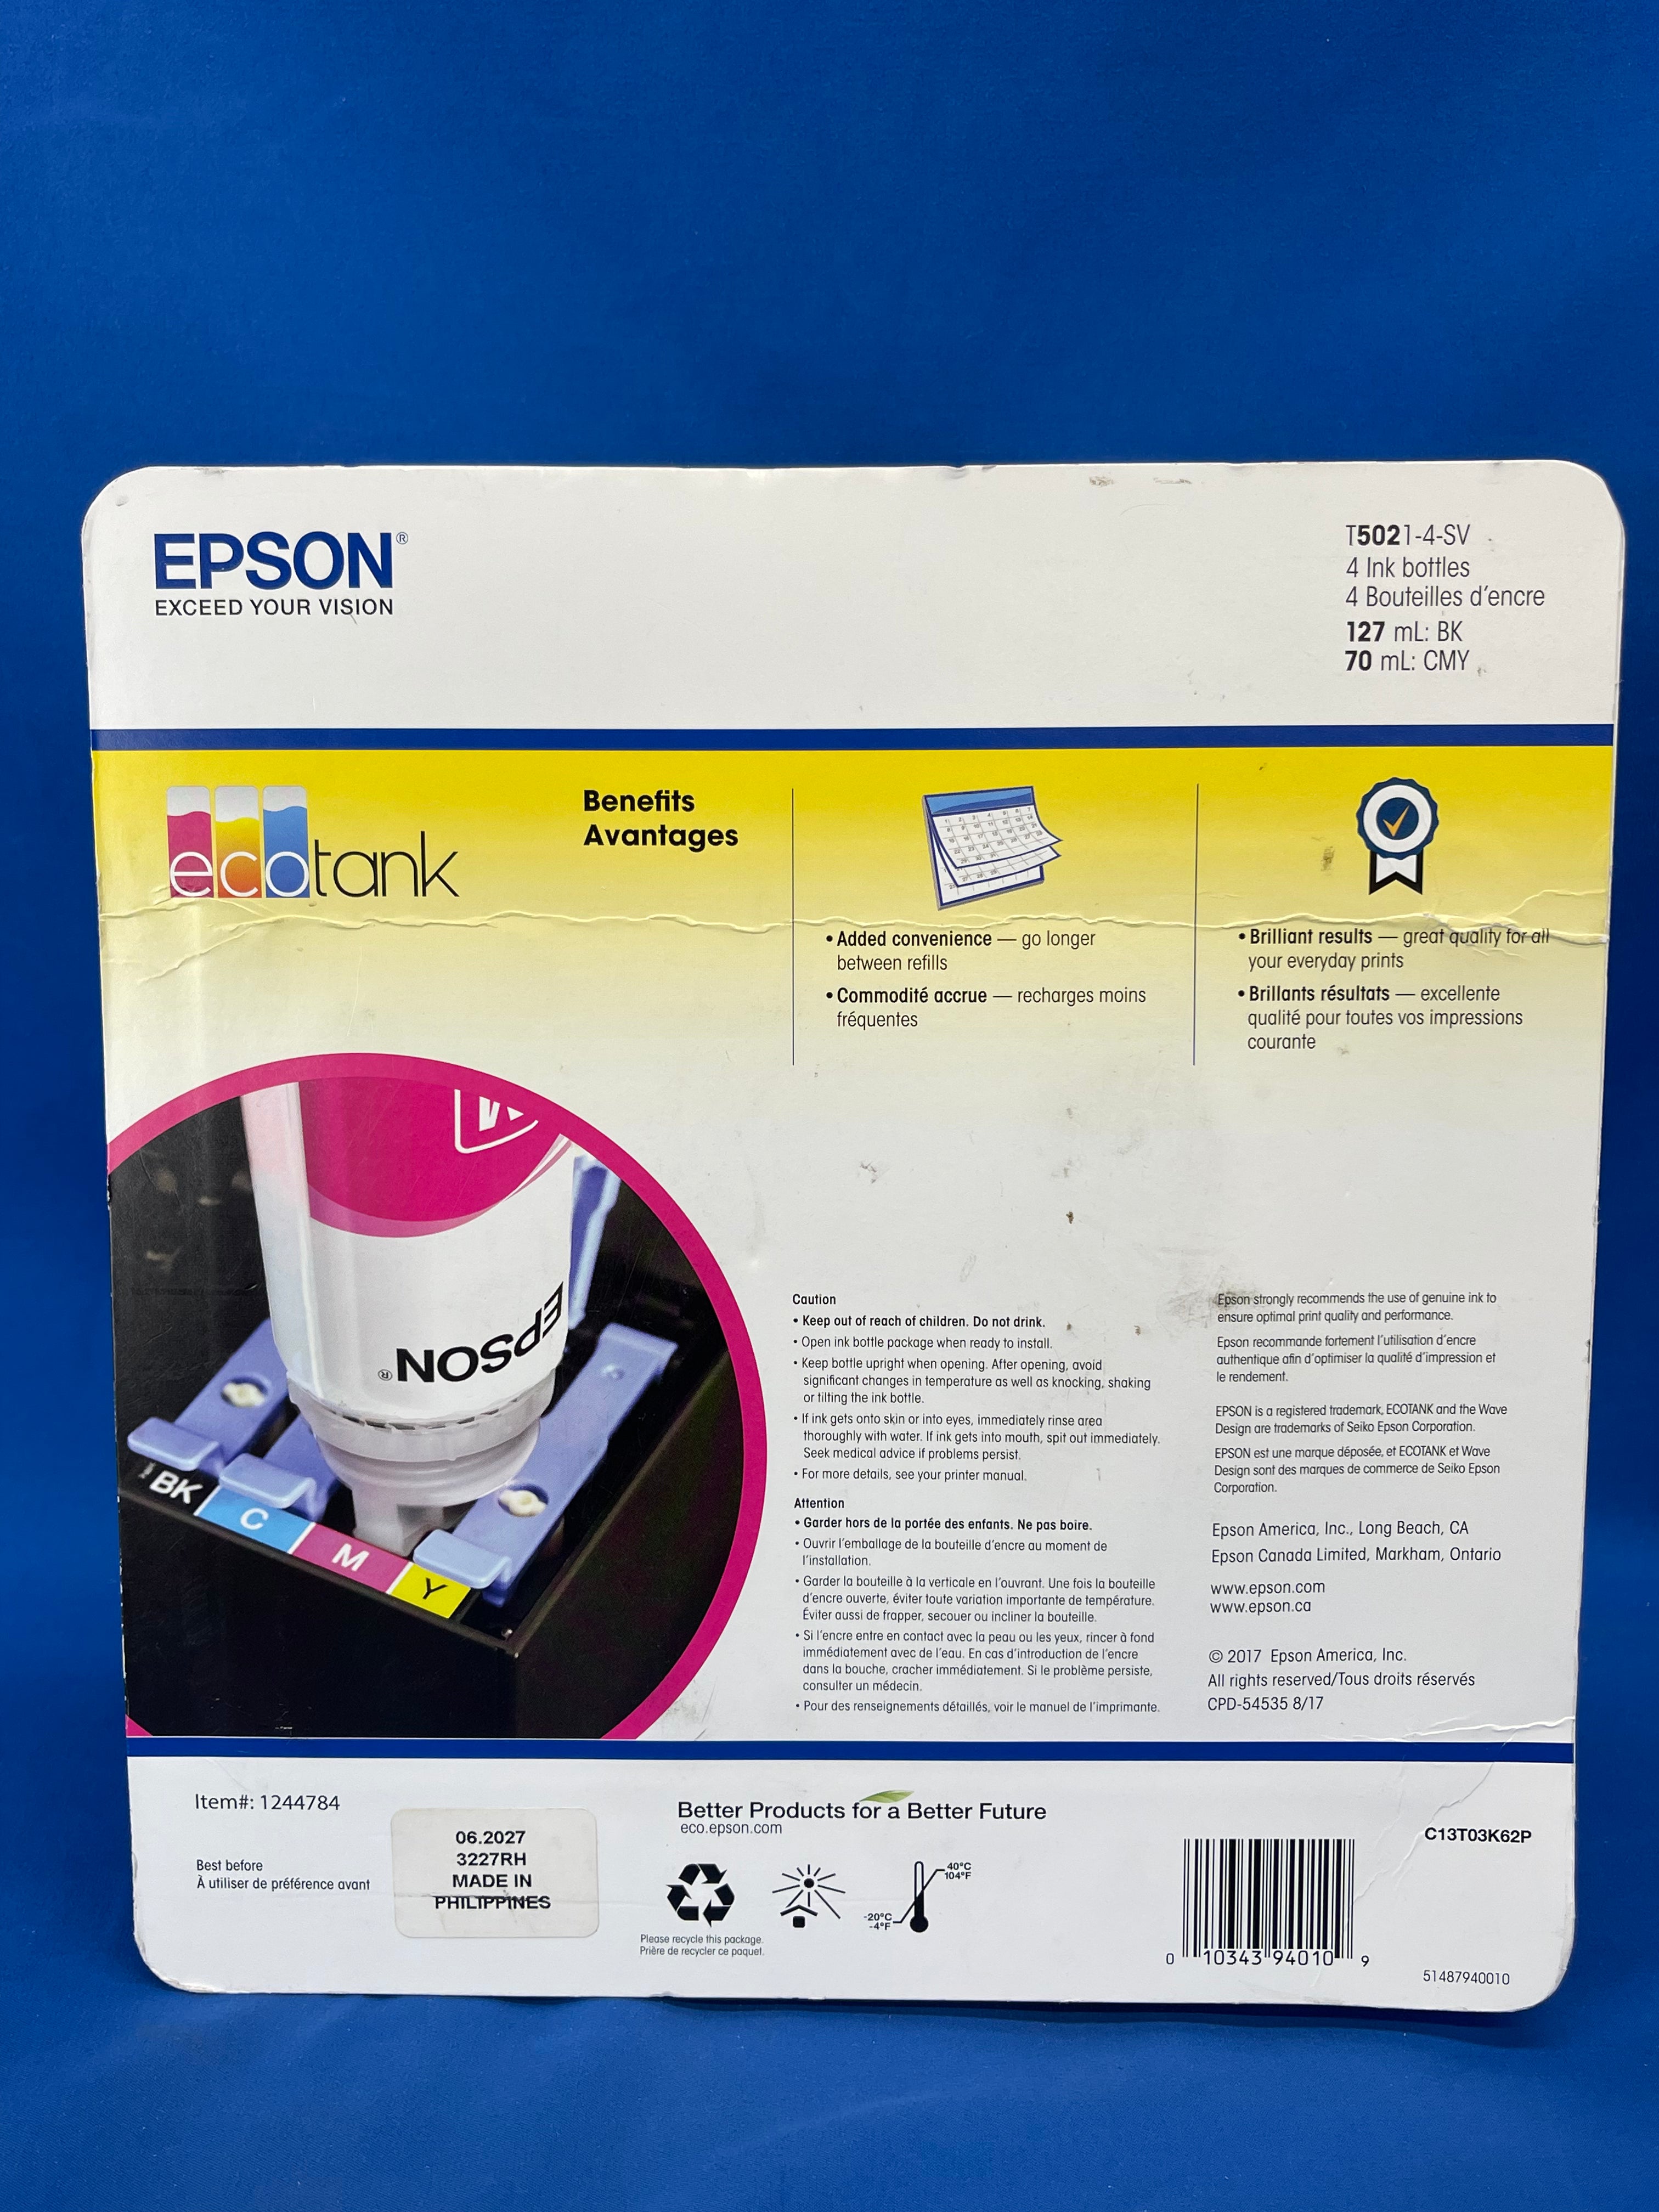 EPSON EcoTank 502 Ink Bottles (Black, Cyan, Magenta, Yellow)